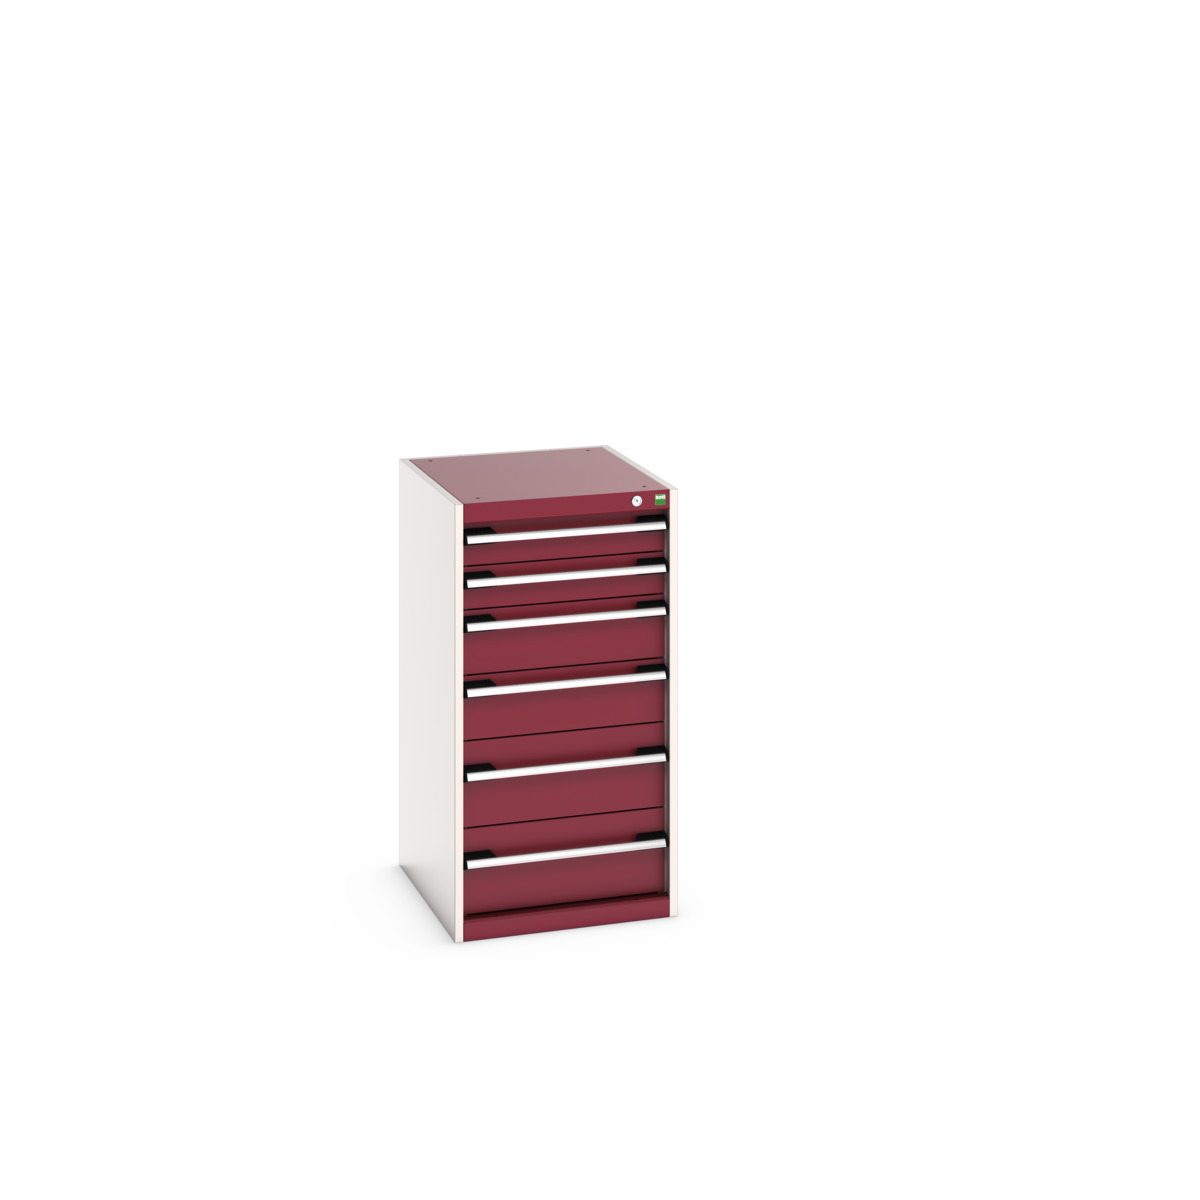 40018059.24V - cubio drawer cabinet